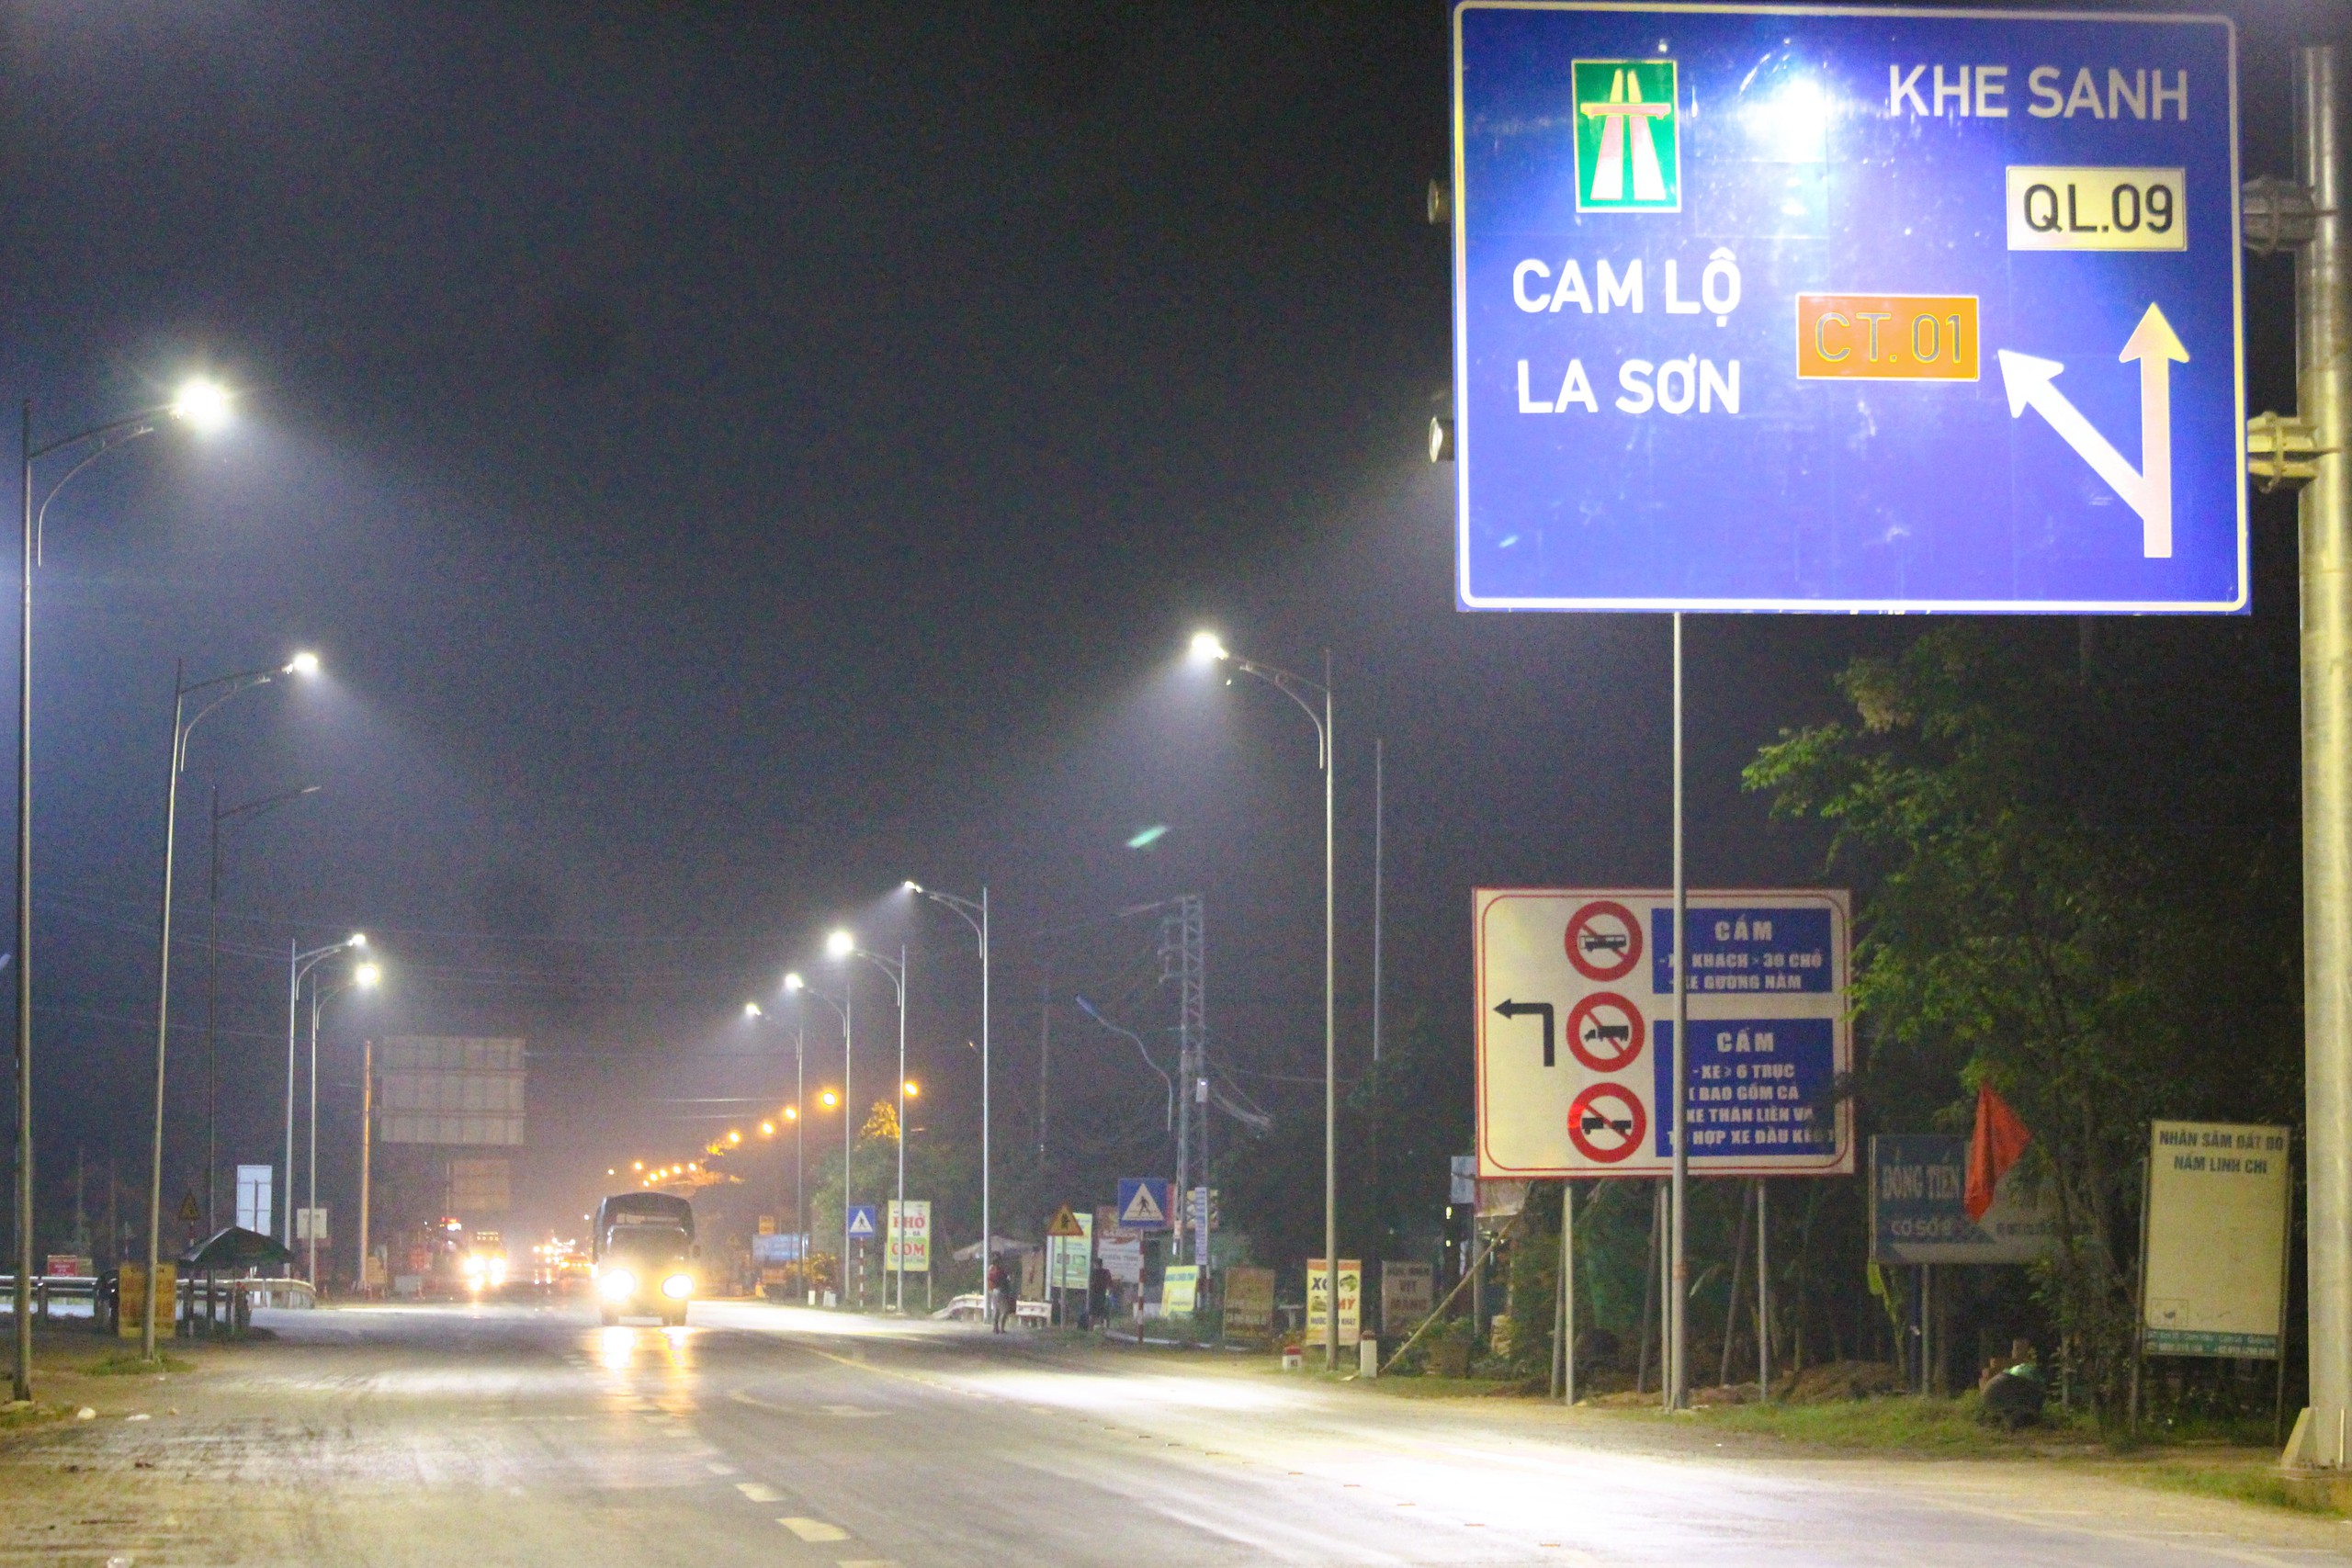 Cắm loạt biển báo phương tiện không vào cao tốc Cam Lộ - La Sơn- Ảnh 1.